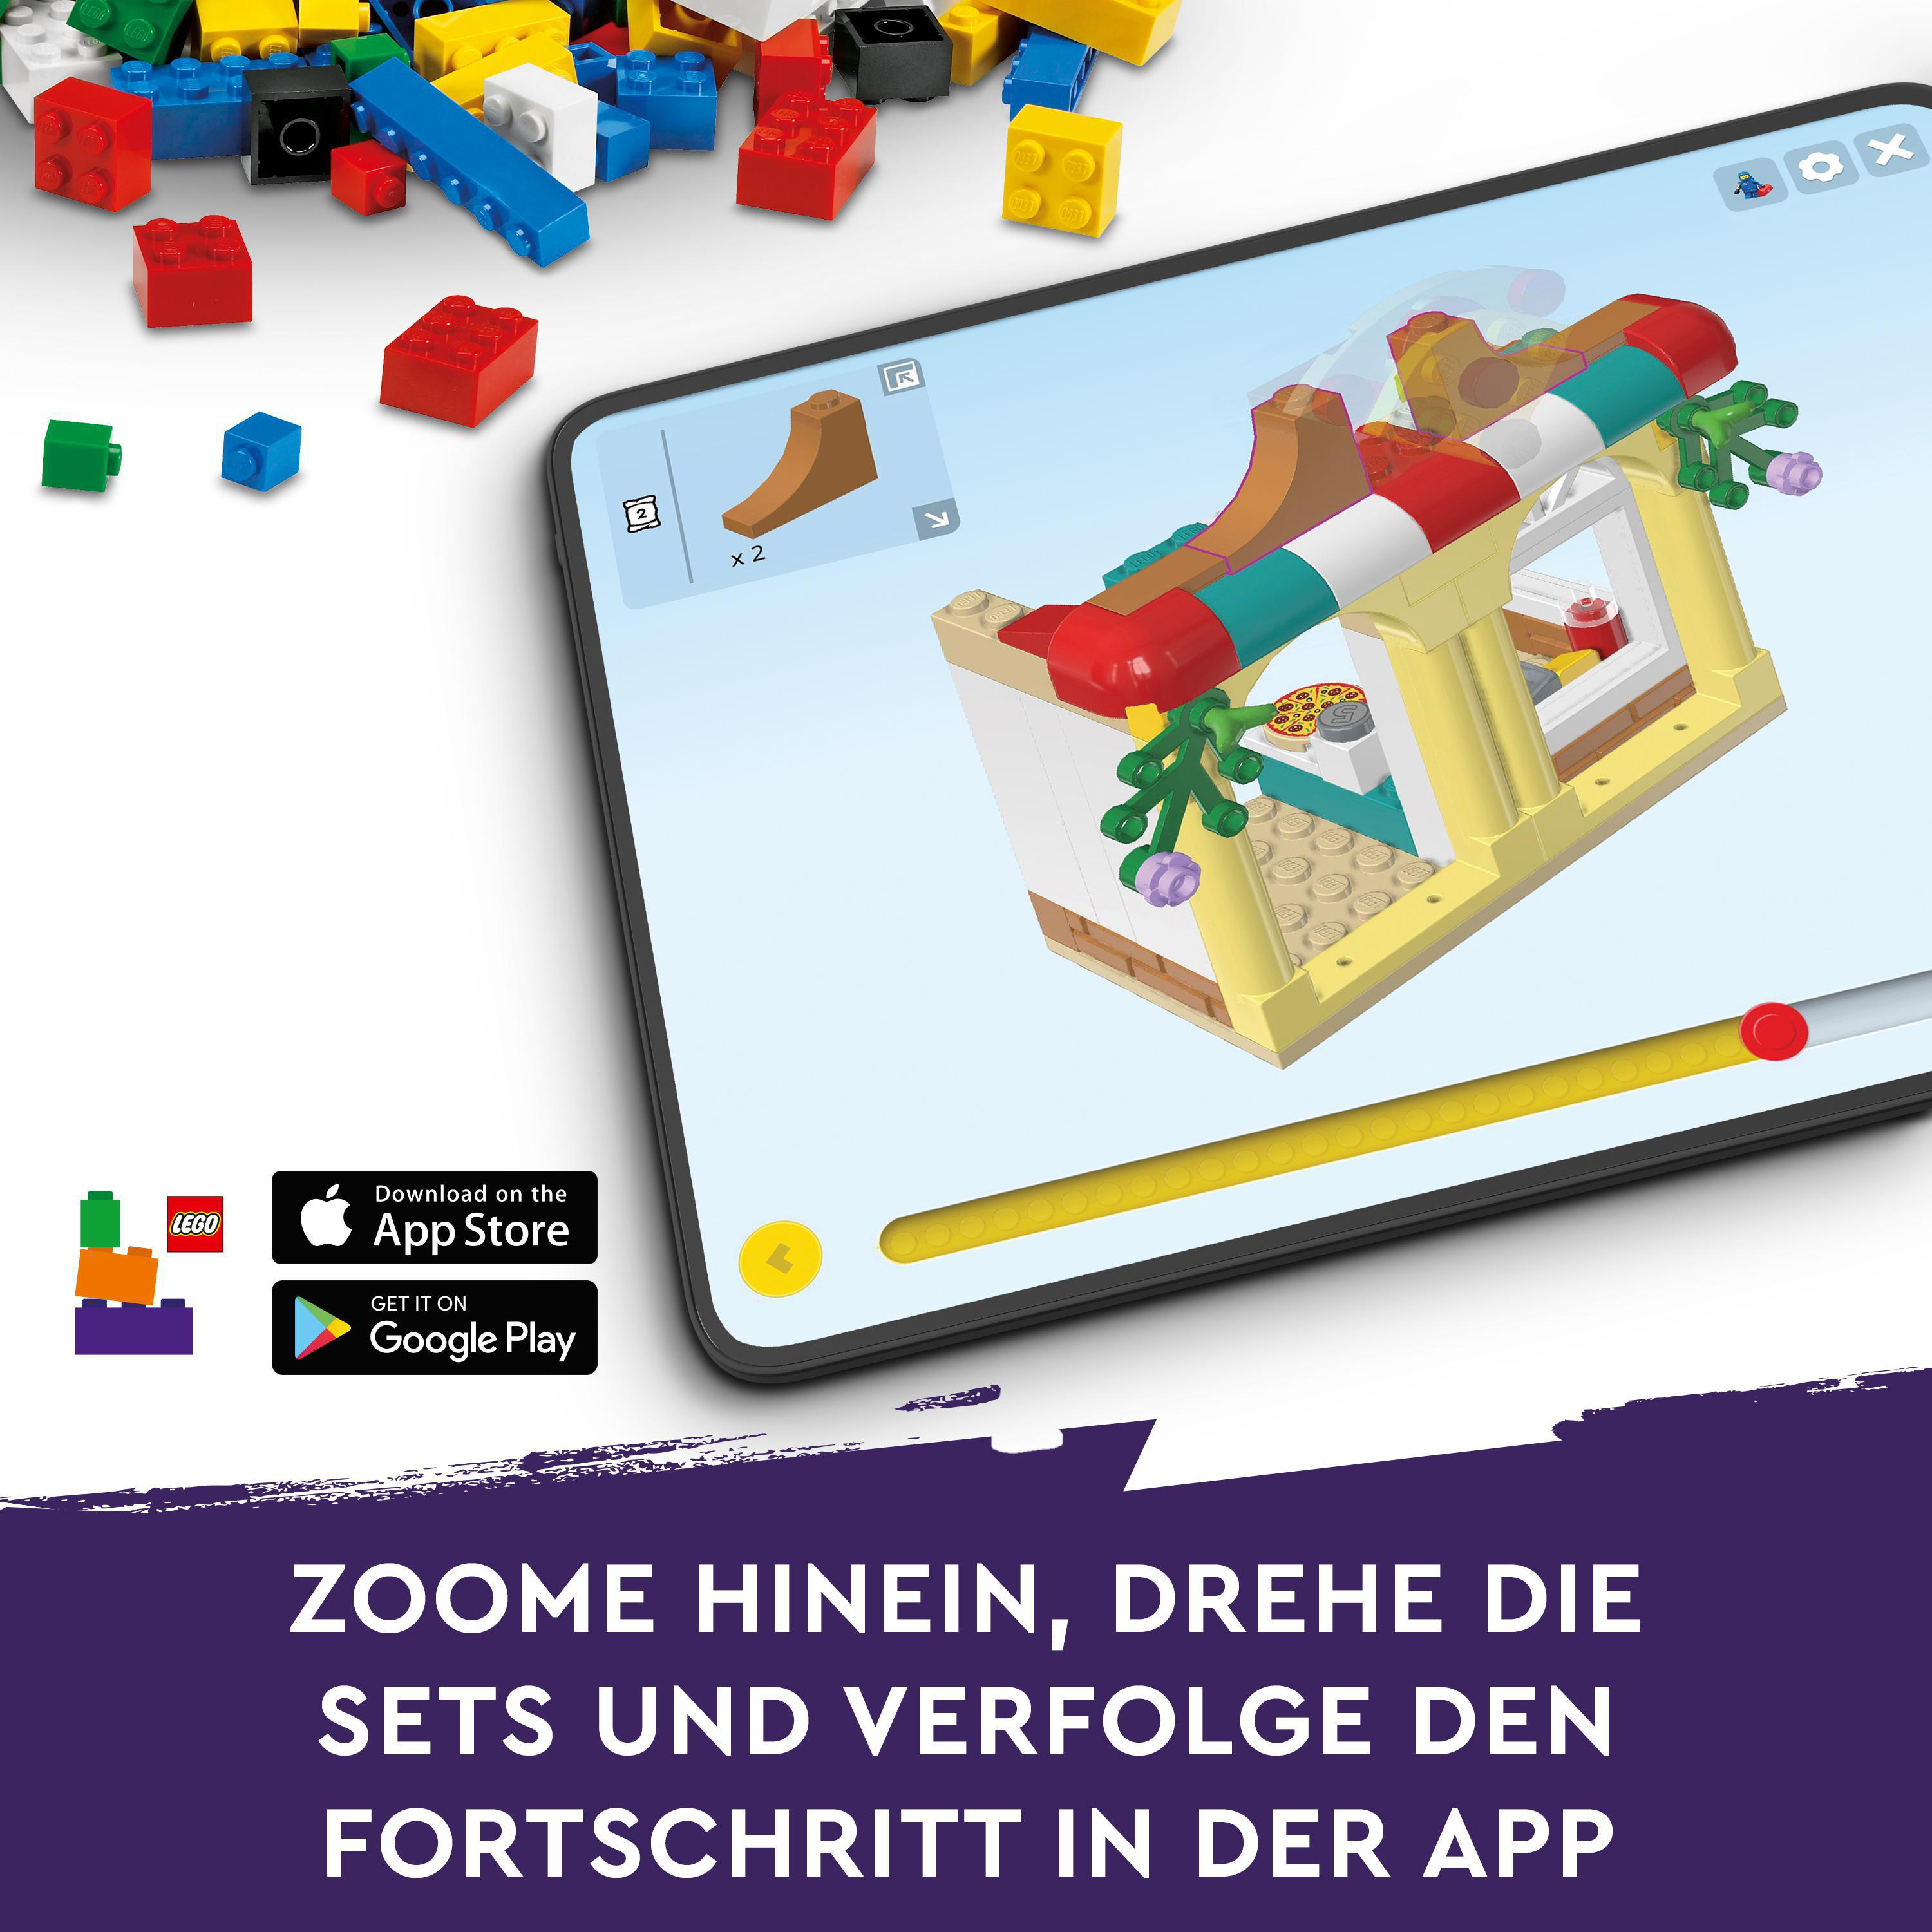 LEGO Friends Bausatz, Autumns Reitstall Mehrfarbig 41745